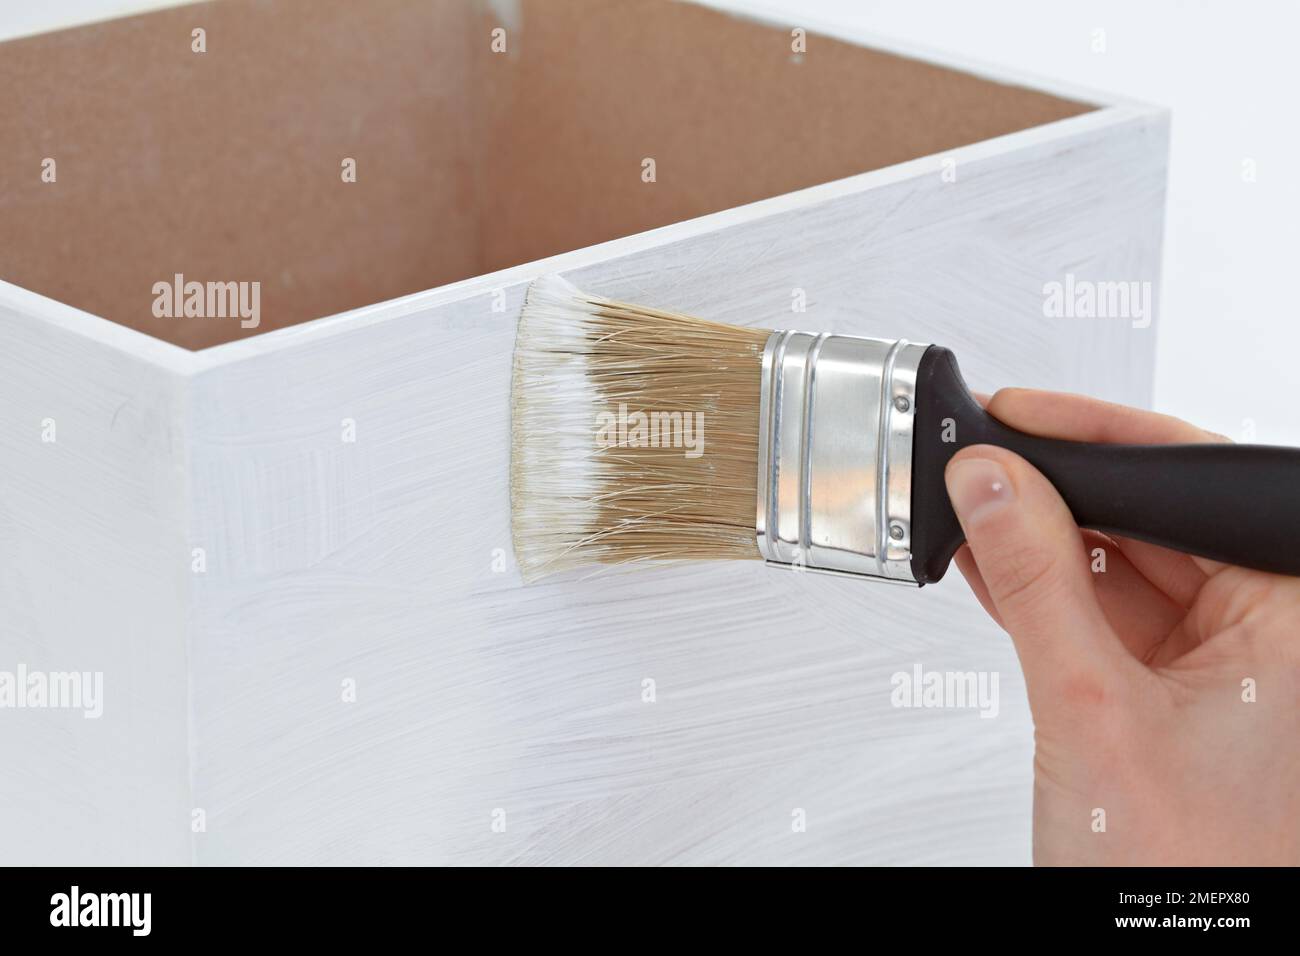 Femme utilisant une grande brosse pour peindre une émulsion blanche mate pour l'apprêt sur une boîte en bois, gros plan Banque D'Images